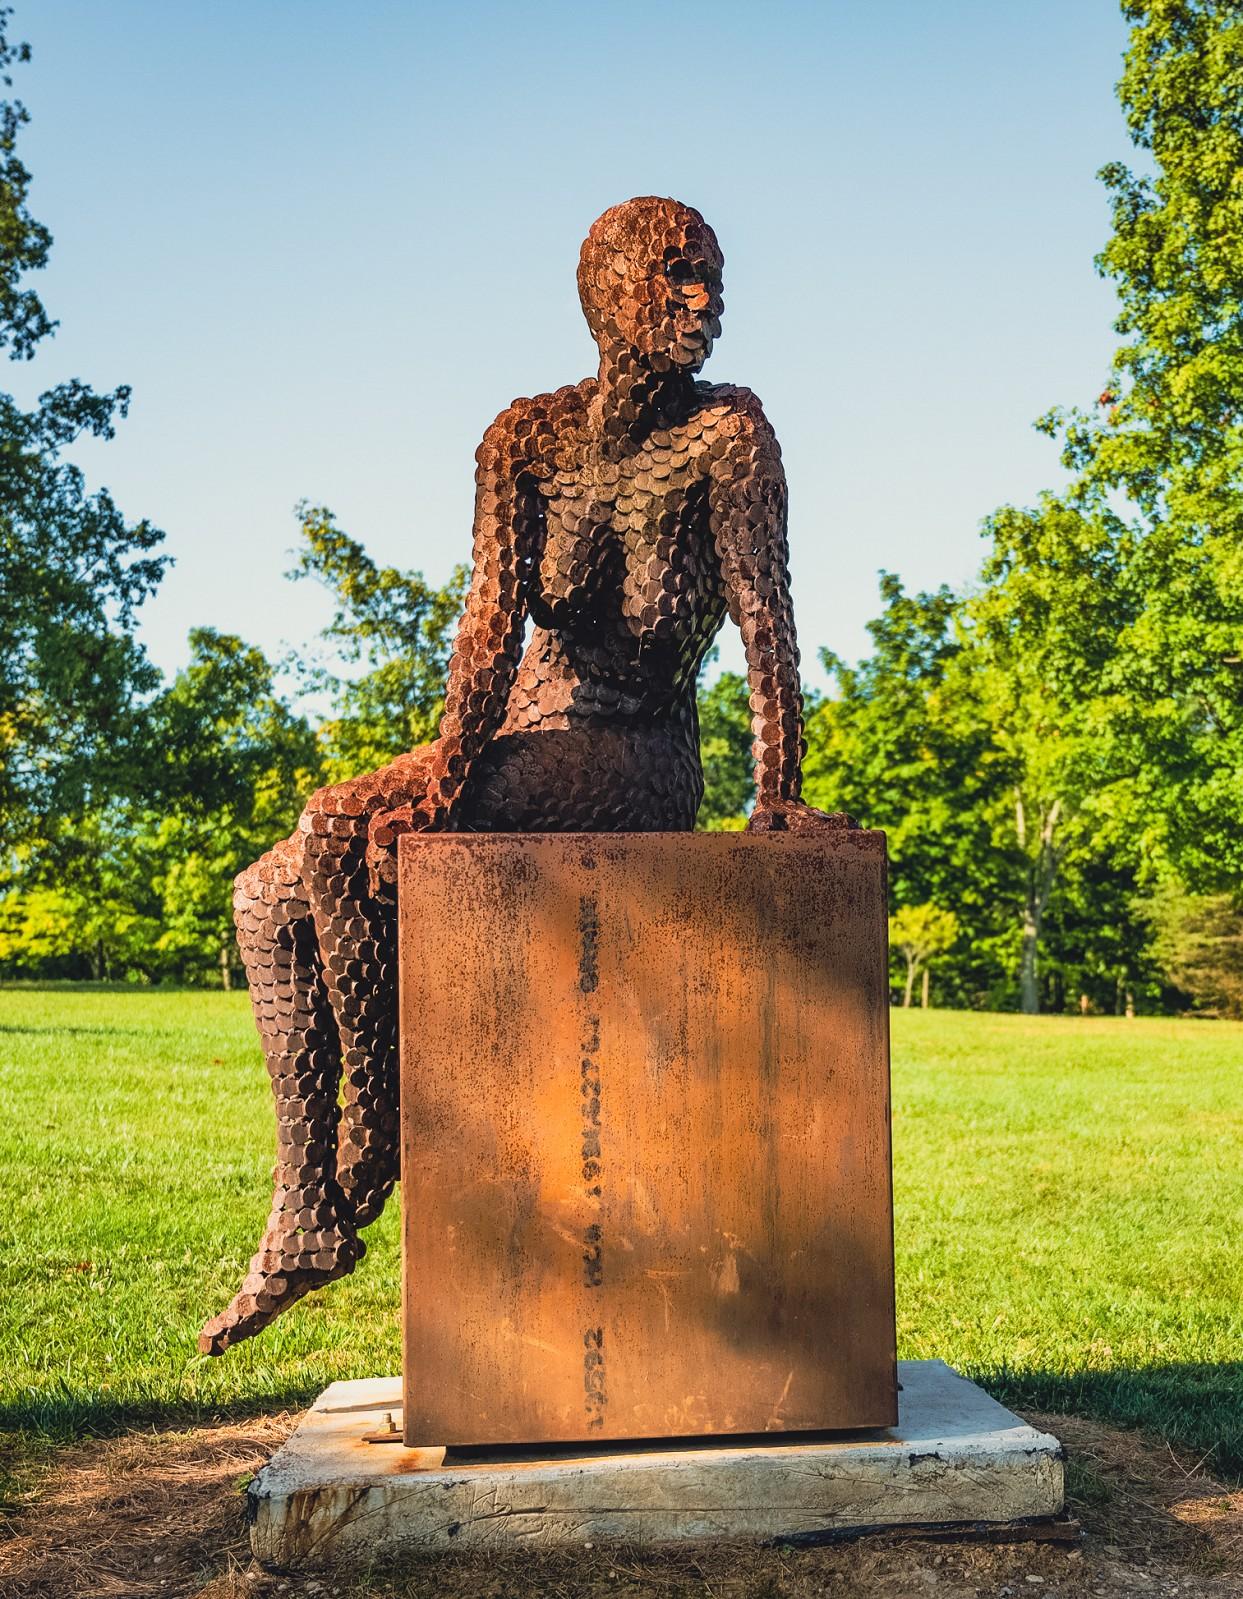 Jason Kimes Figurative Sculpture - Anticipation - large, rust, female figure, Corten steel outdoor sculpture